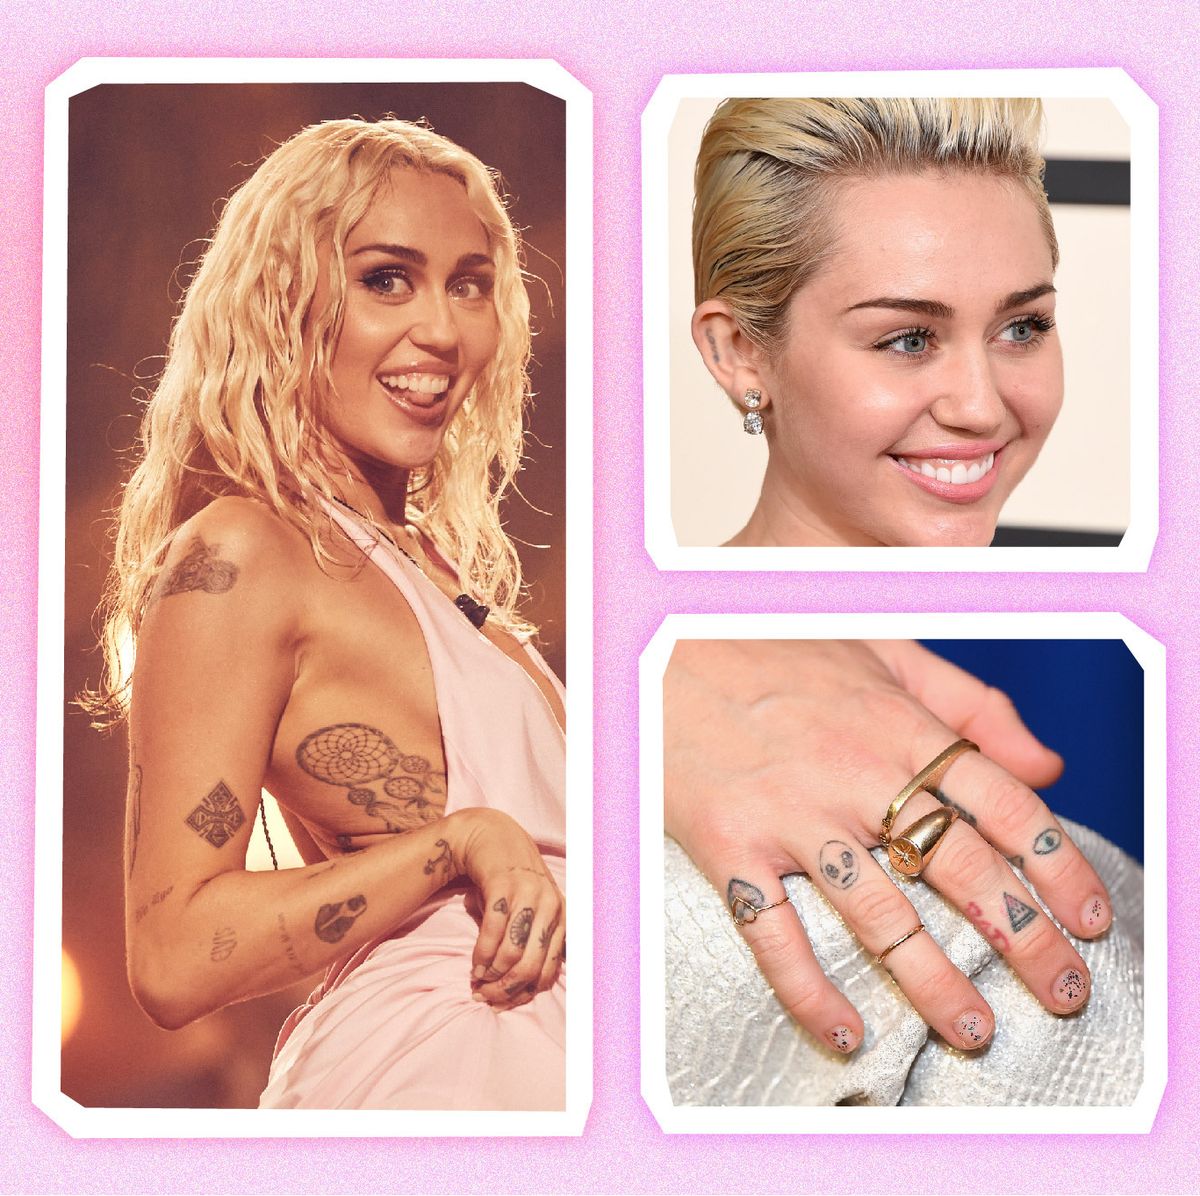 Miley Cyrus Porn Interracial - All of Miley Cyrus' Tattoos â€“ Miley Cyrus Tattoos and Their Meaning